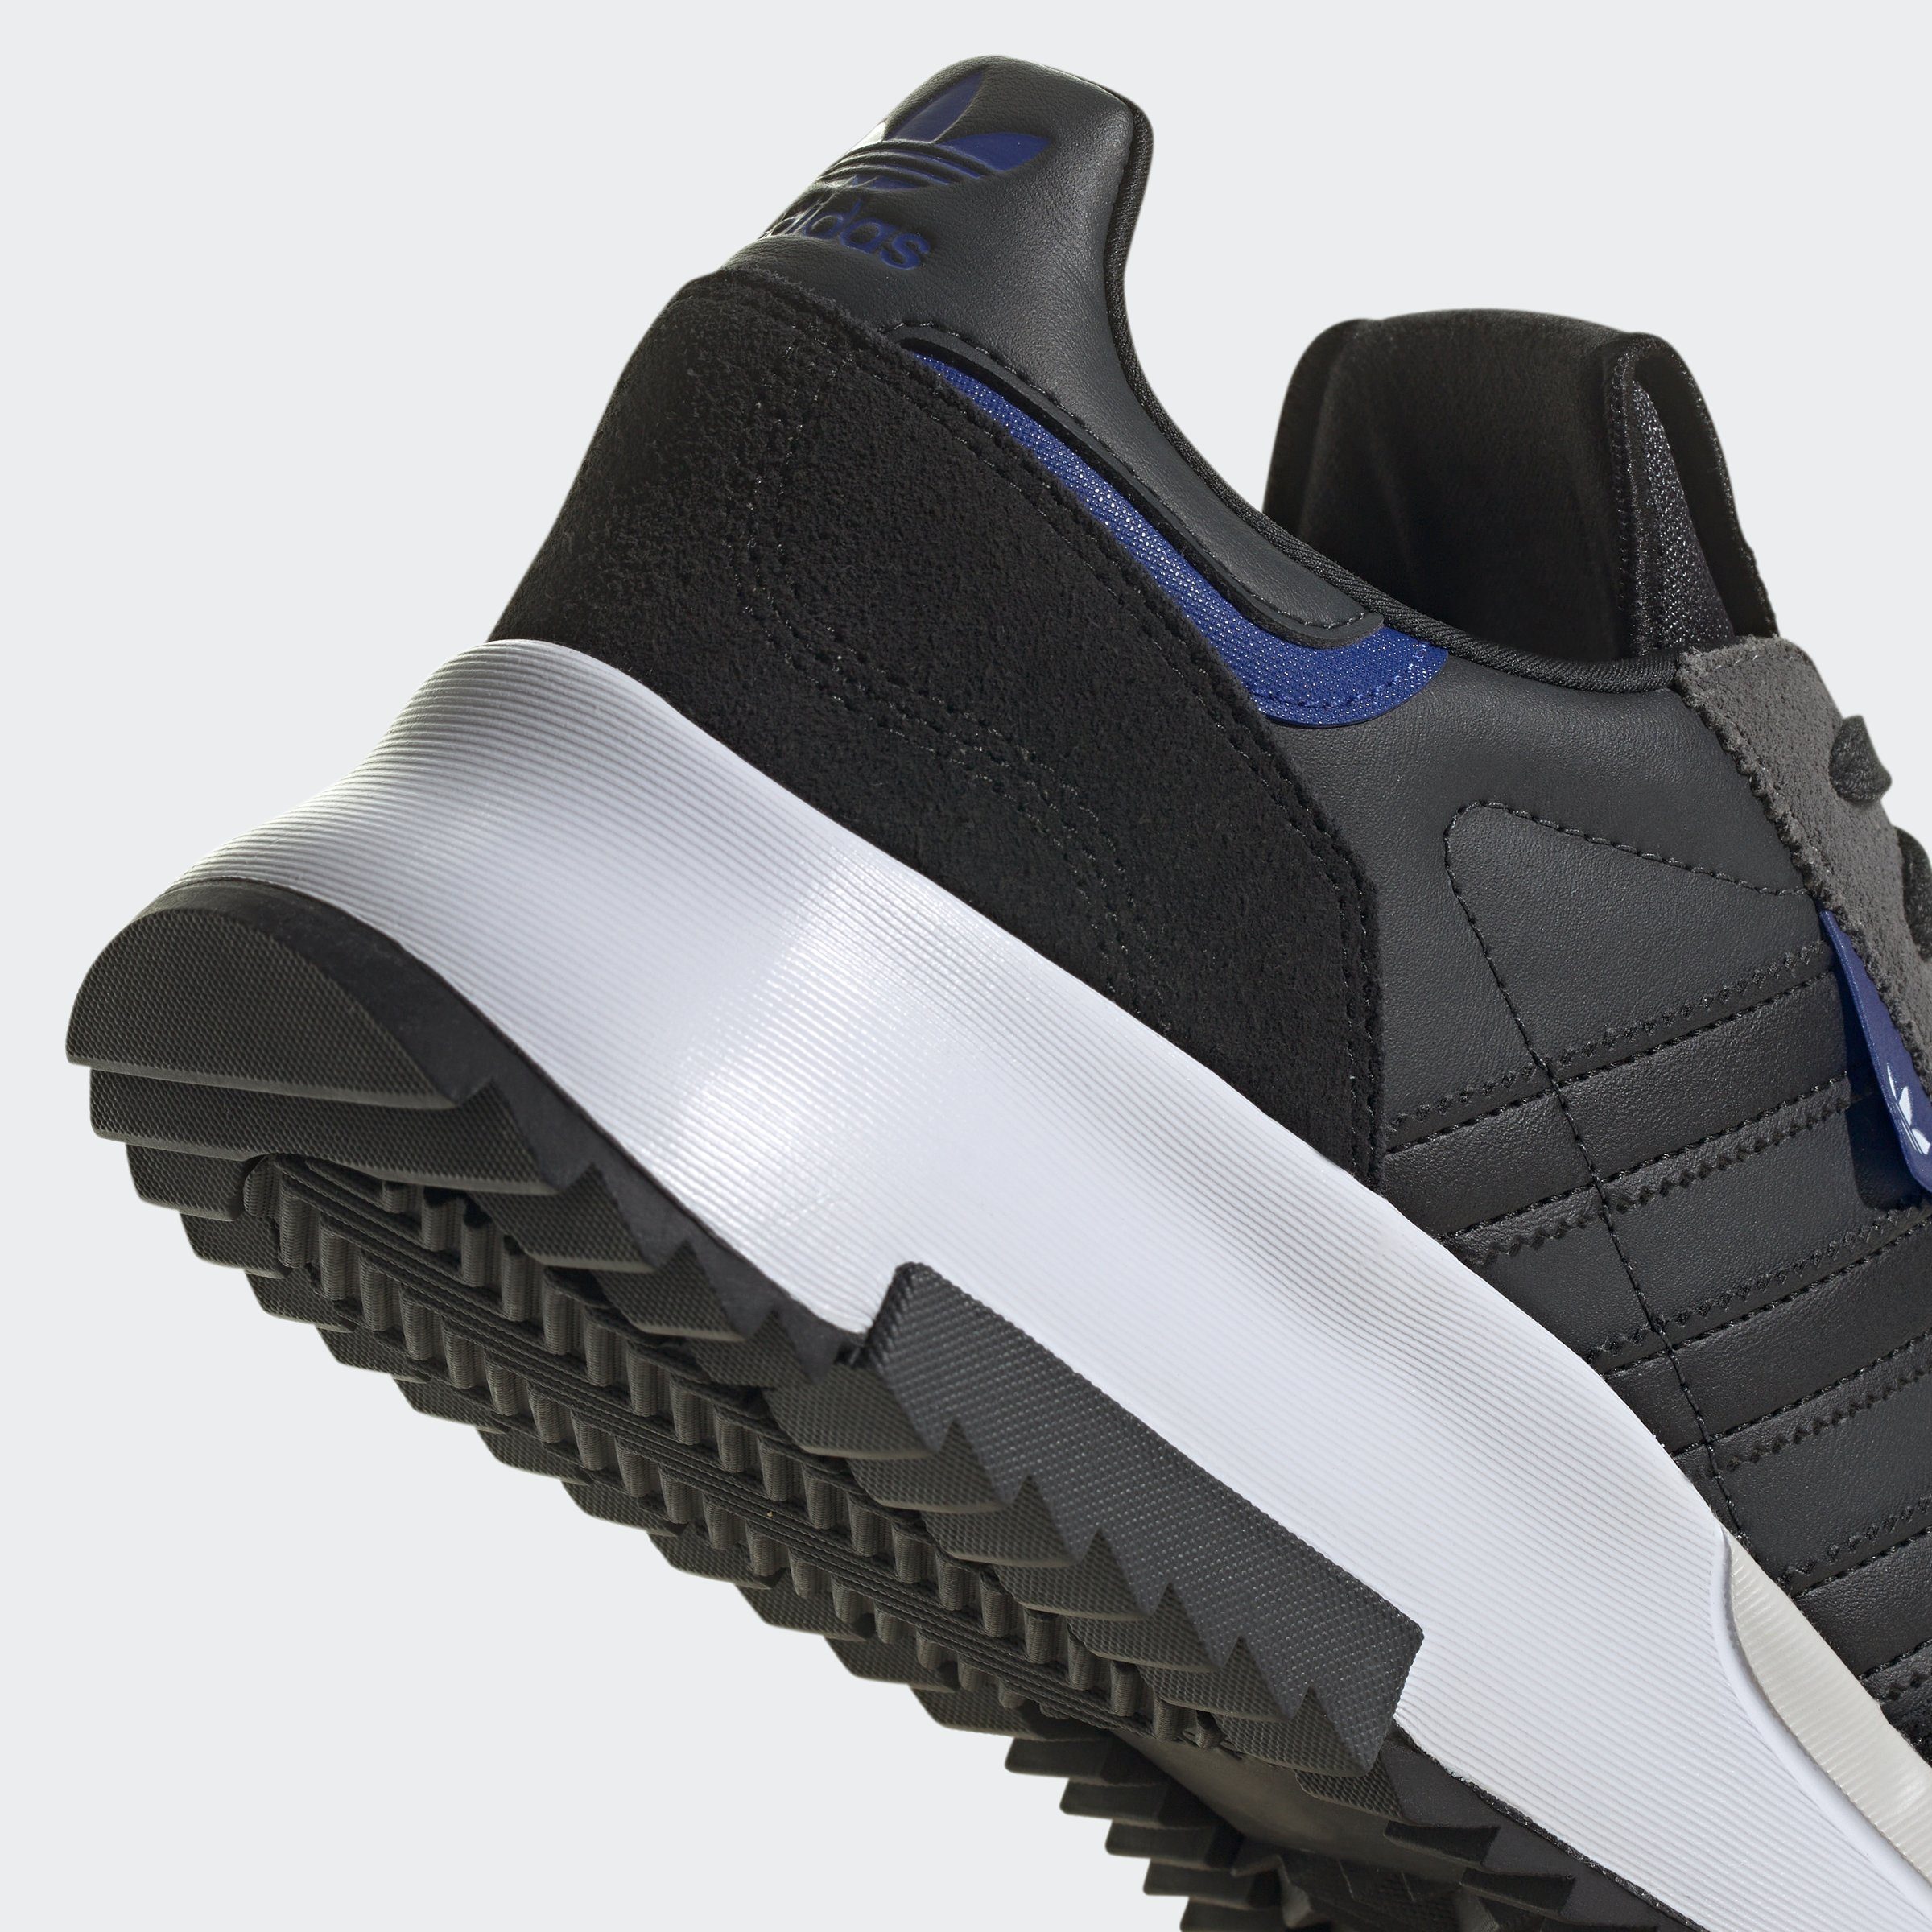 Originals Lucid adidas Core Semi / Carbon Black / F2 RETROPY Blue Sneaker